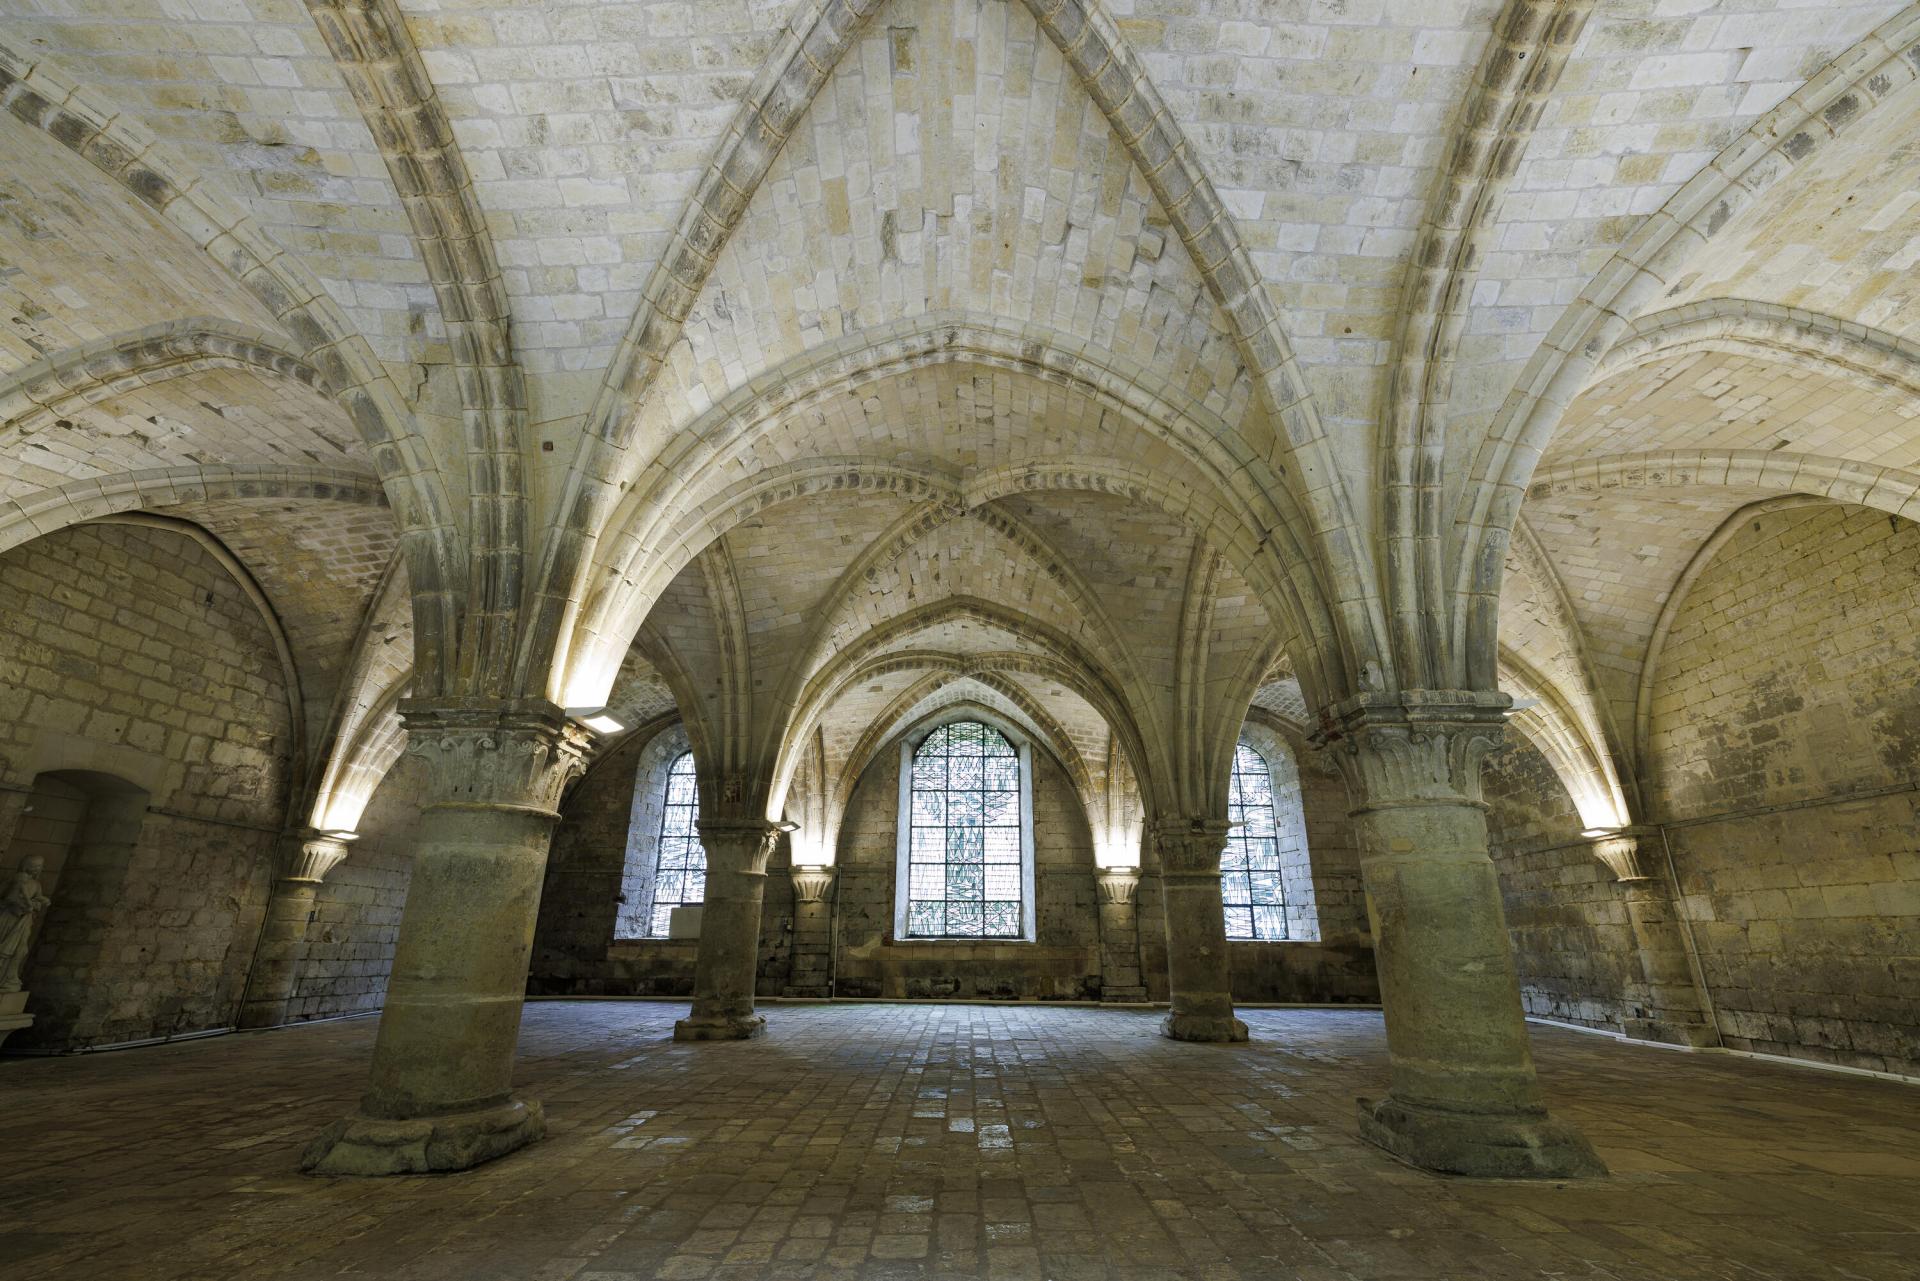 L'abbaye de Vaucelles et sa magnifique architecture cistercienne. Tourisme Nord.